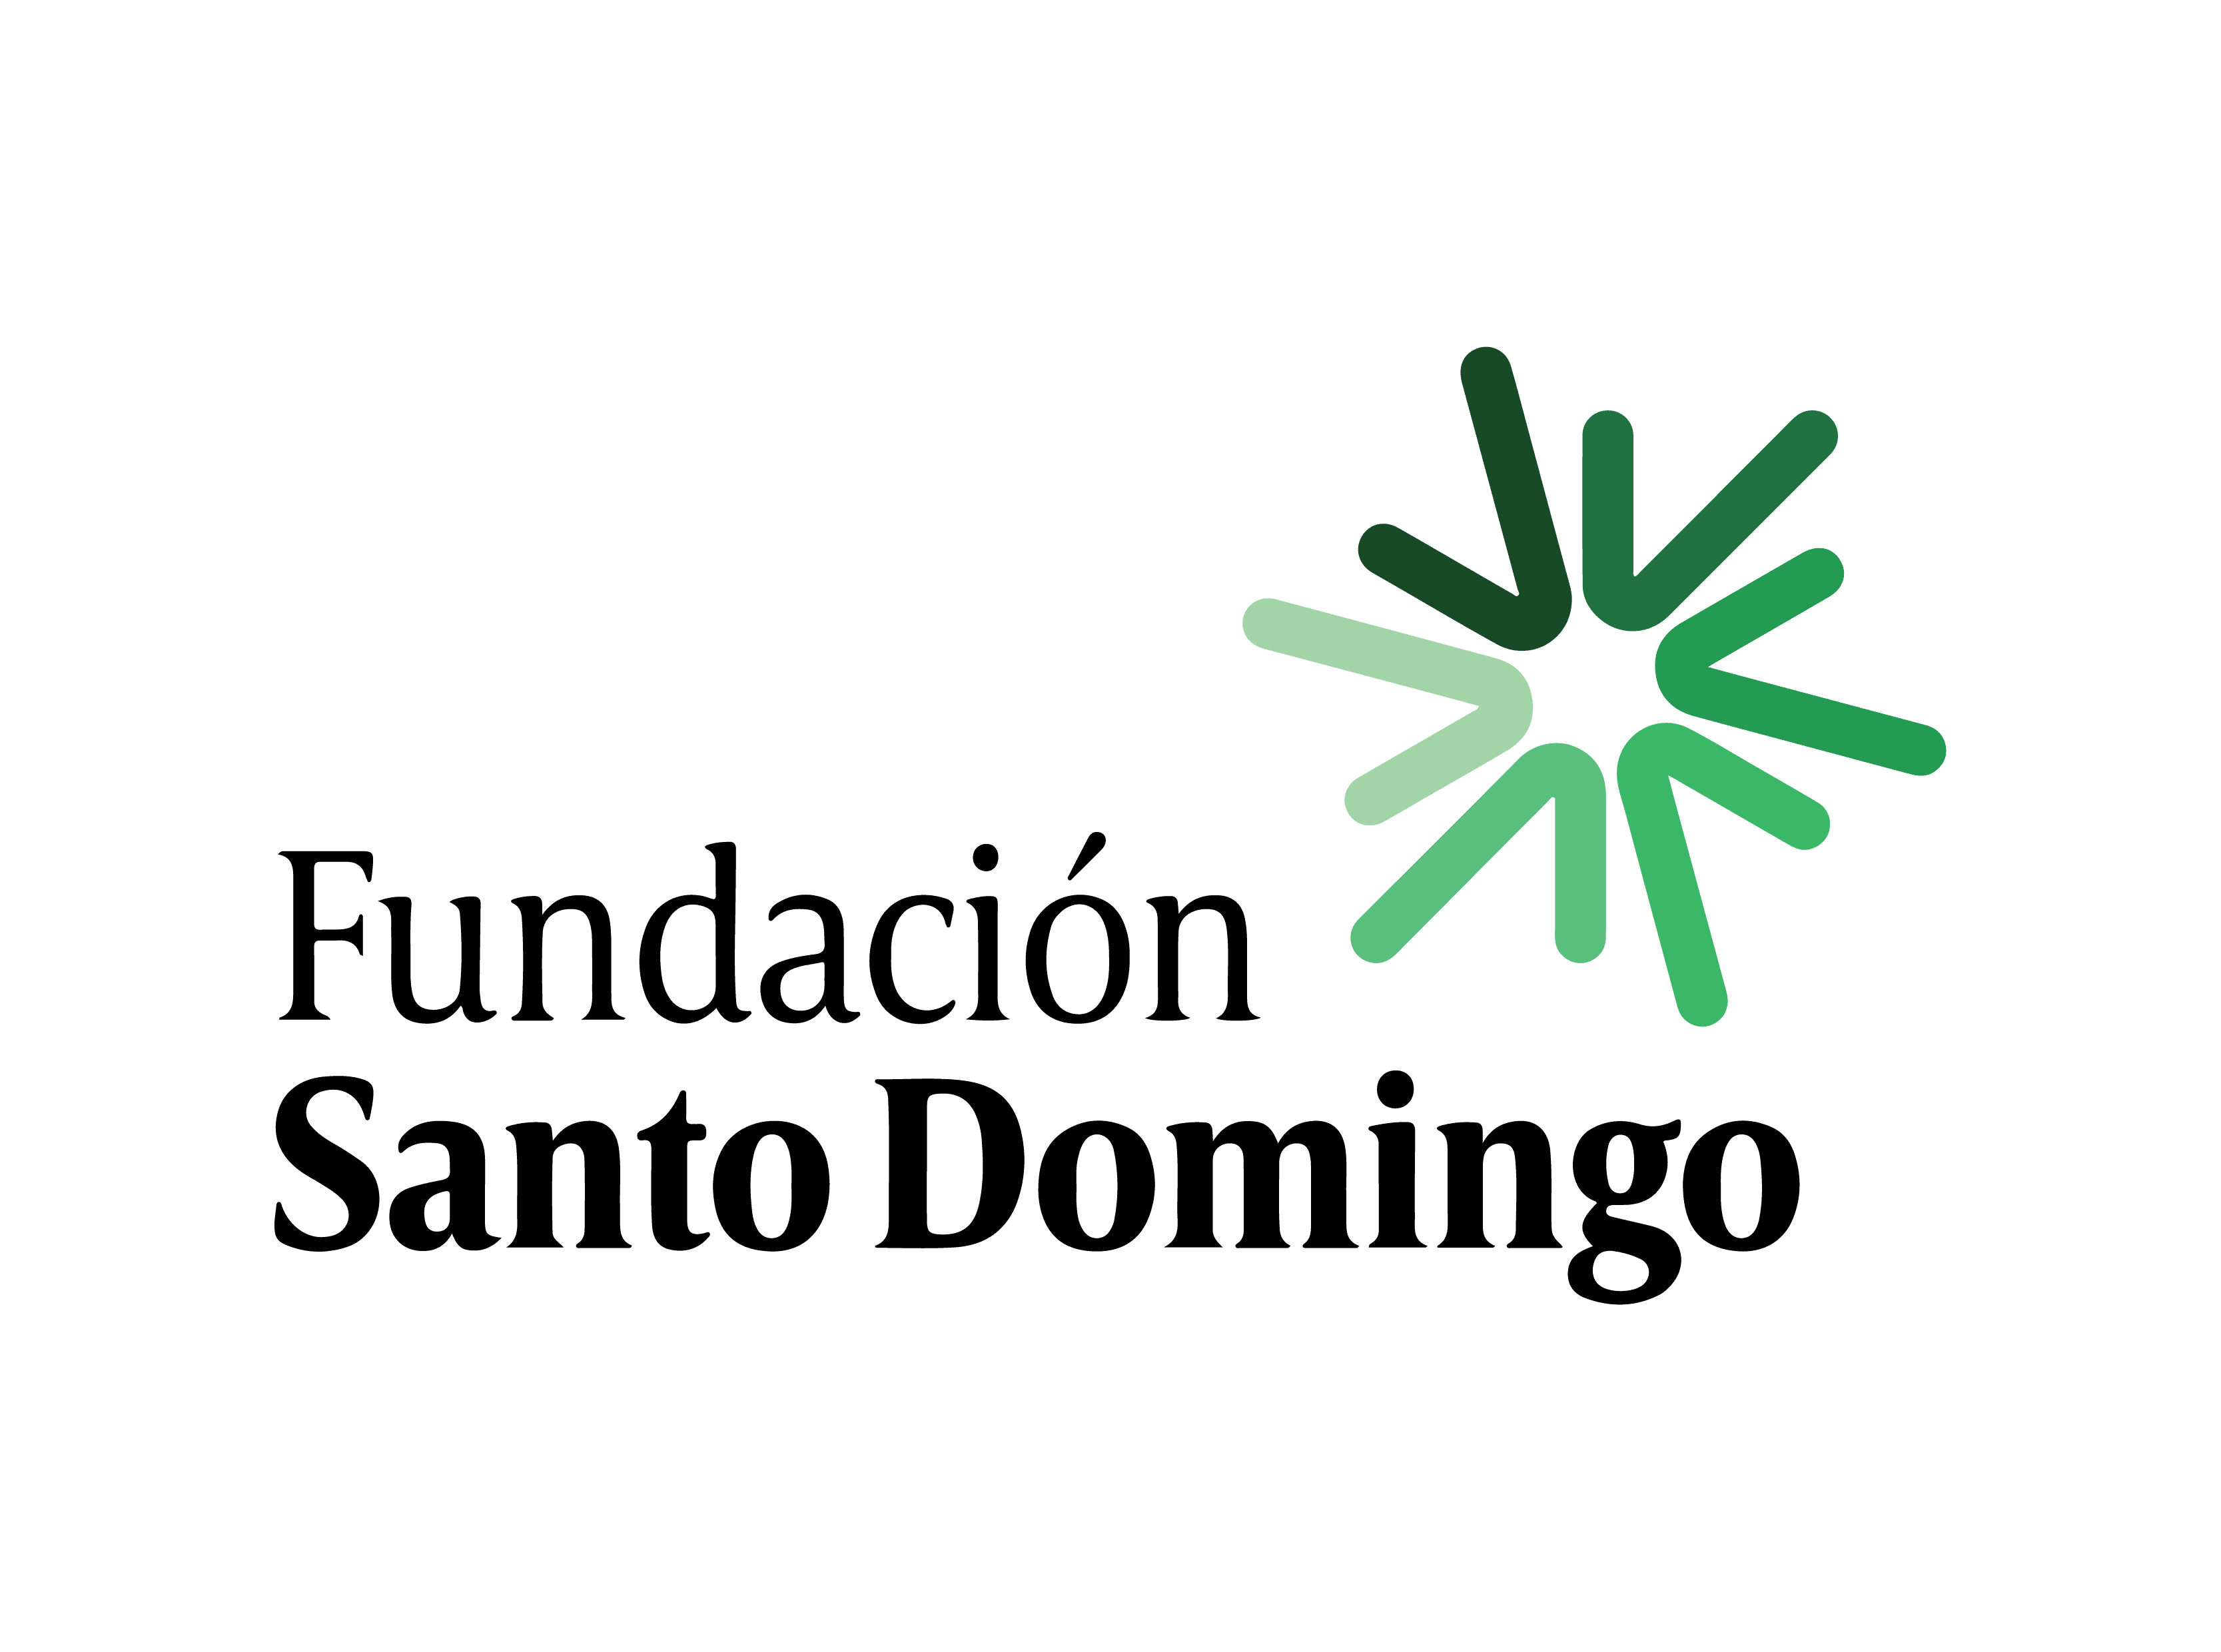 Fundation Santo Domingo